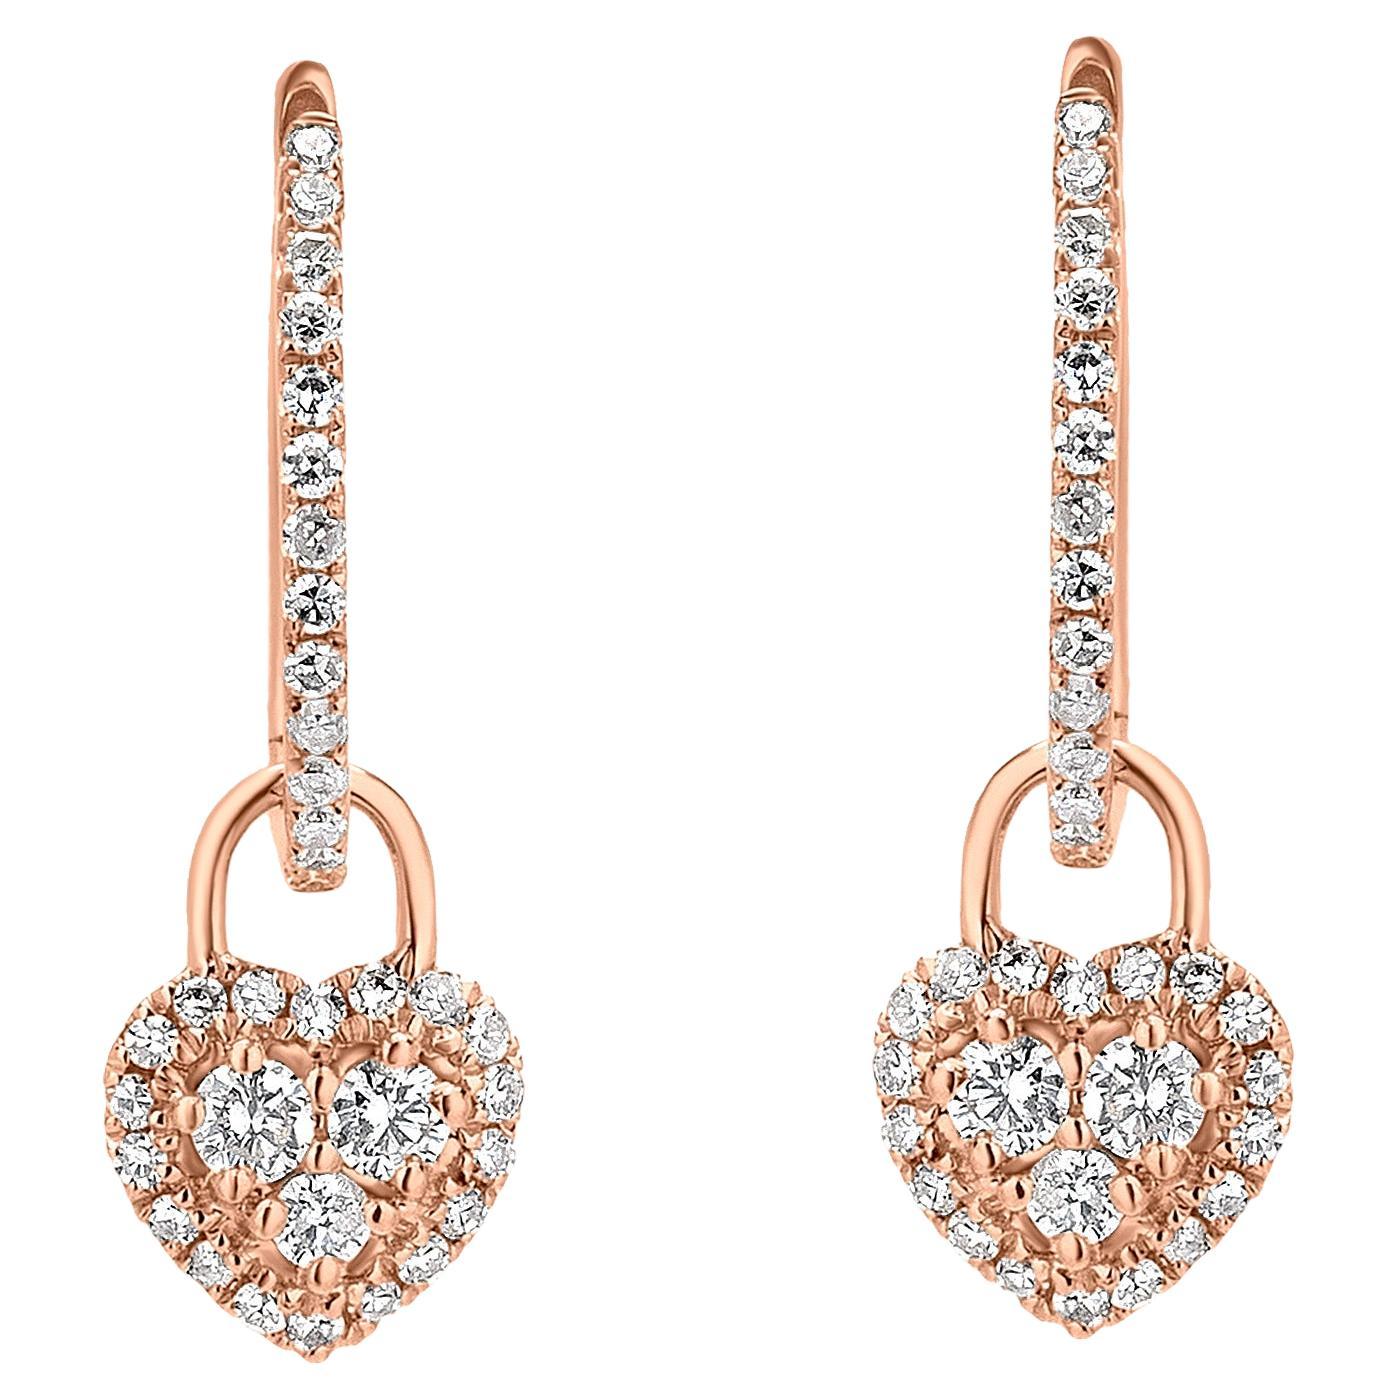 Luxle 0.31cttw Diamond Heart Hoop Drop Earrings in 18k Rose Gold